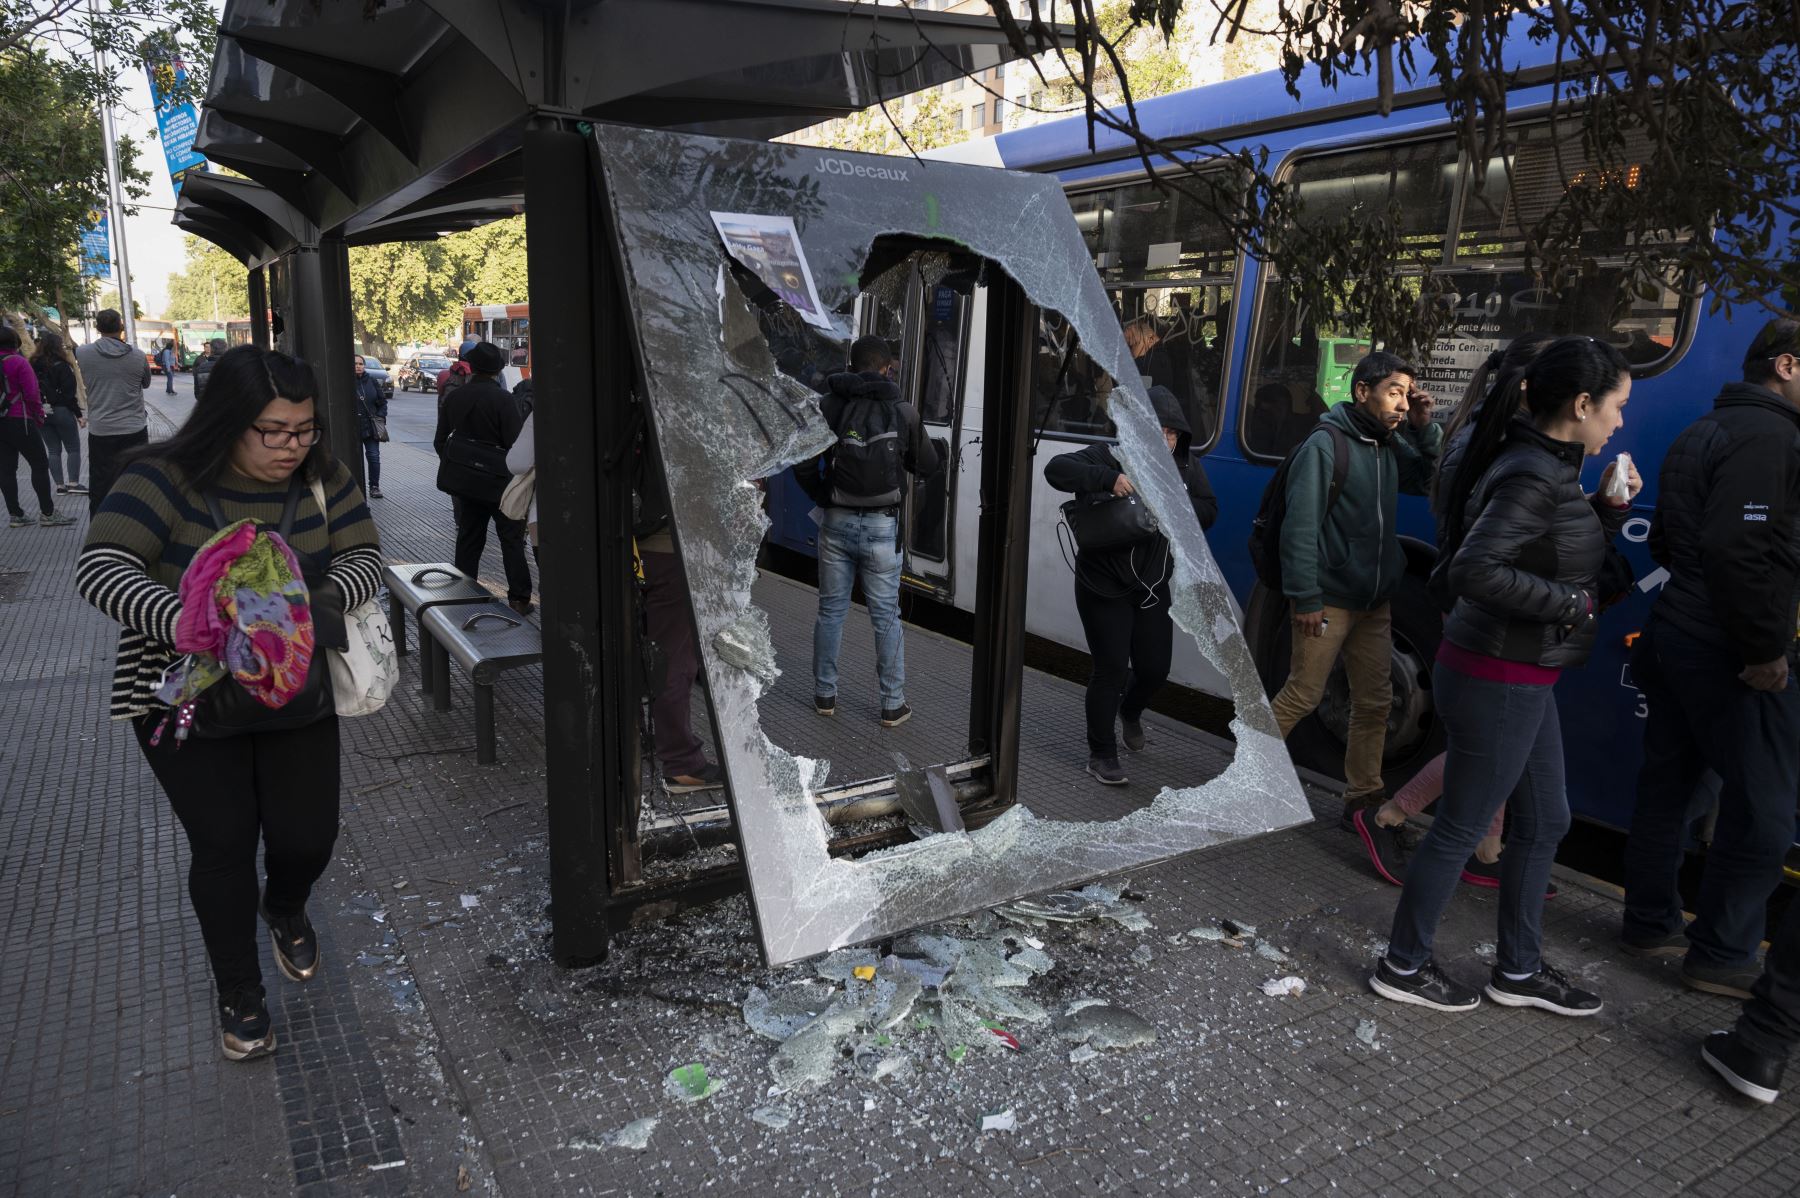 La gente espera tomar un autobús en Santiago de Chile, tras las protestas violentas, inicialmente contra un aumento en las tarifas del metro. Foto: AFP